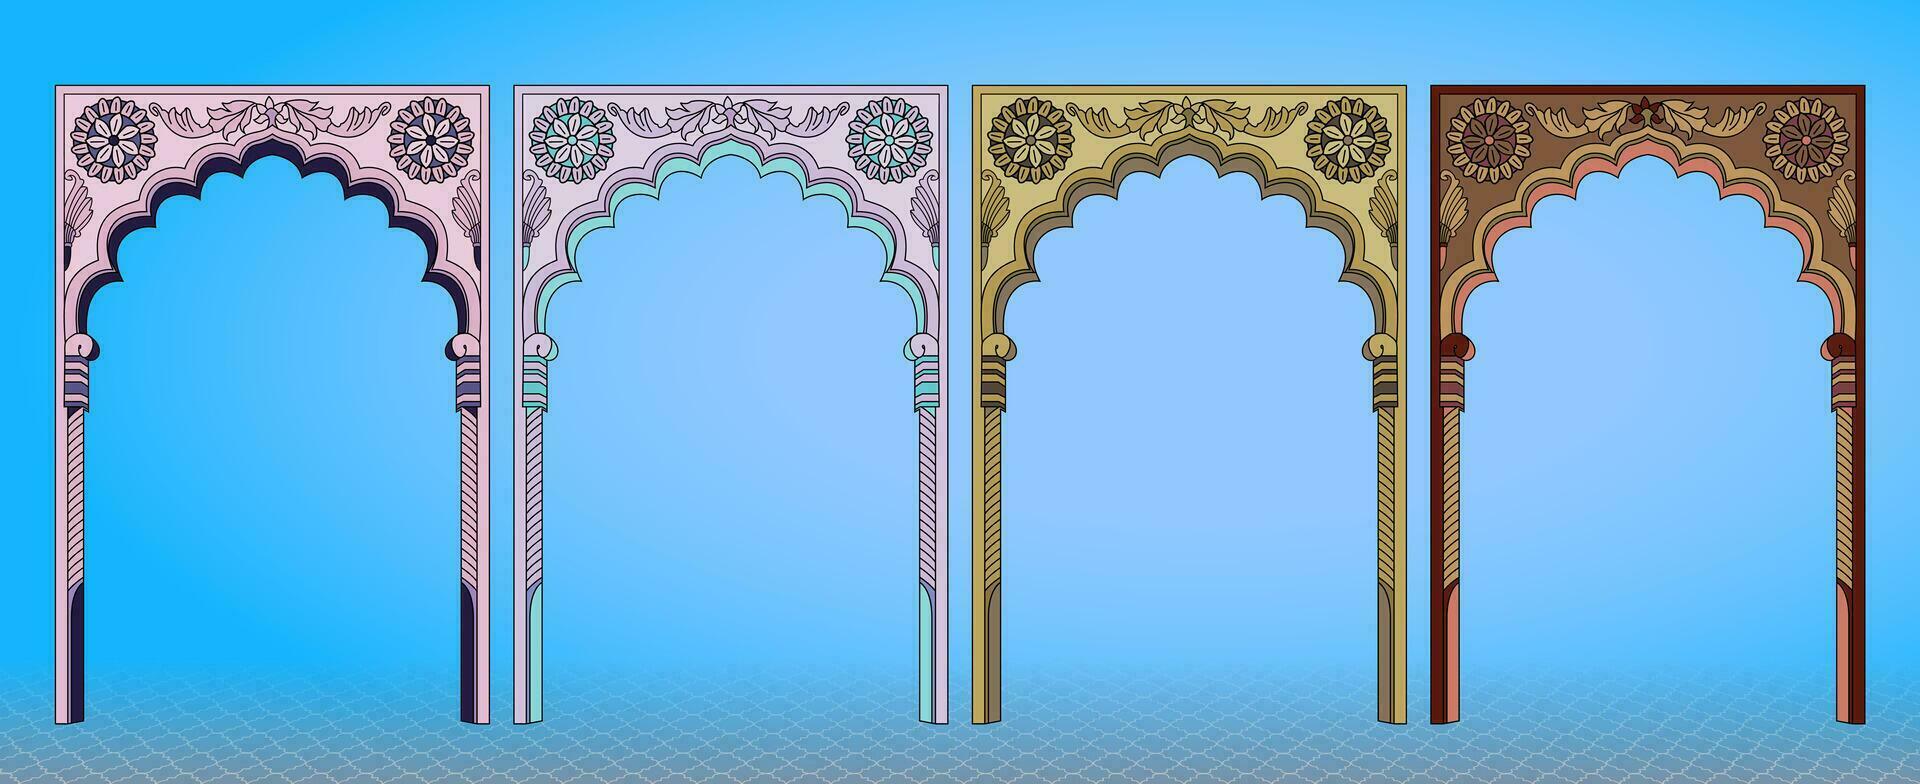 traditionnel Indien Mughal architecture éléments. pouvez être utilisé dans mariage cartes, salutations, et invitations. vecteur illustration